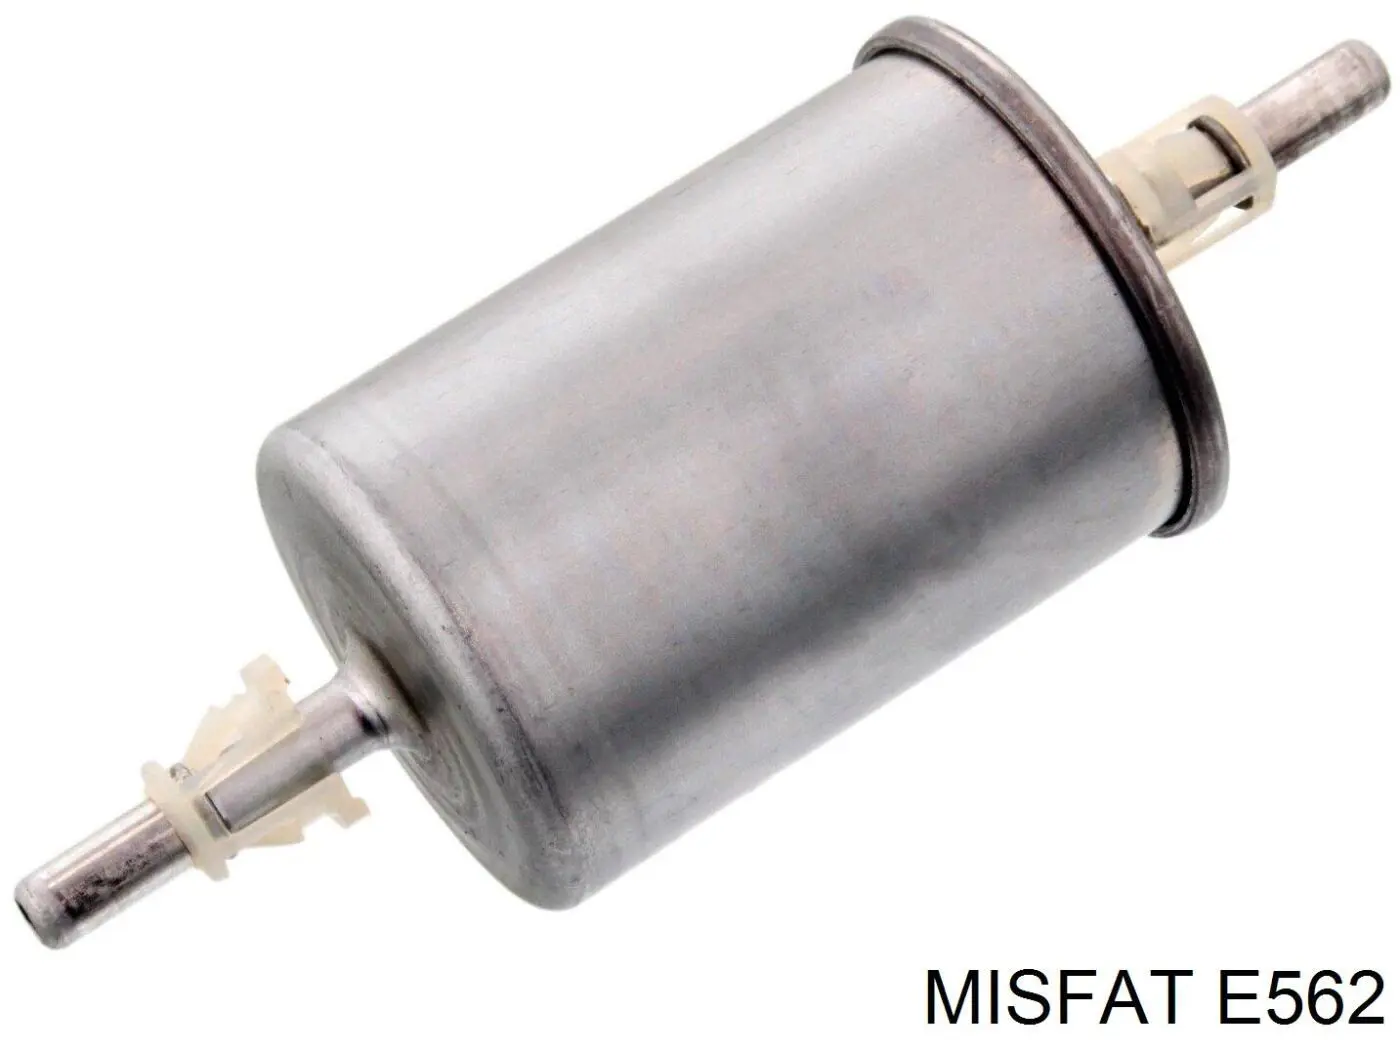 E562 Misfat filtro combustible